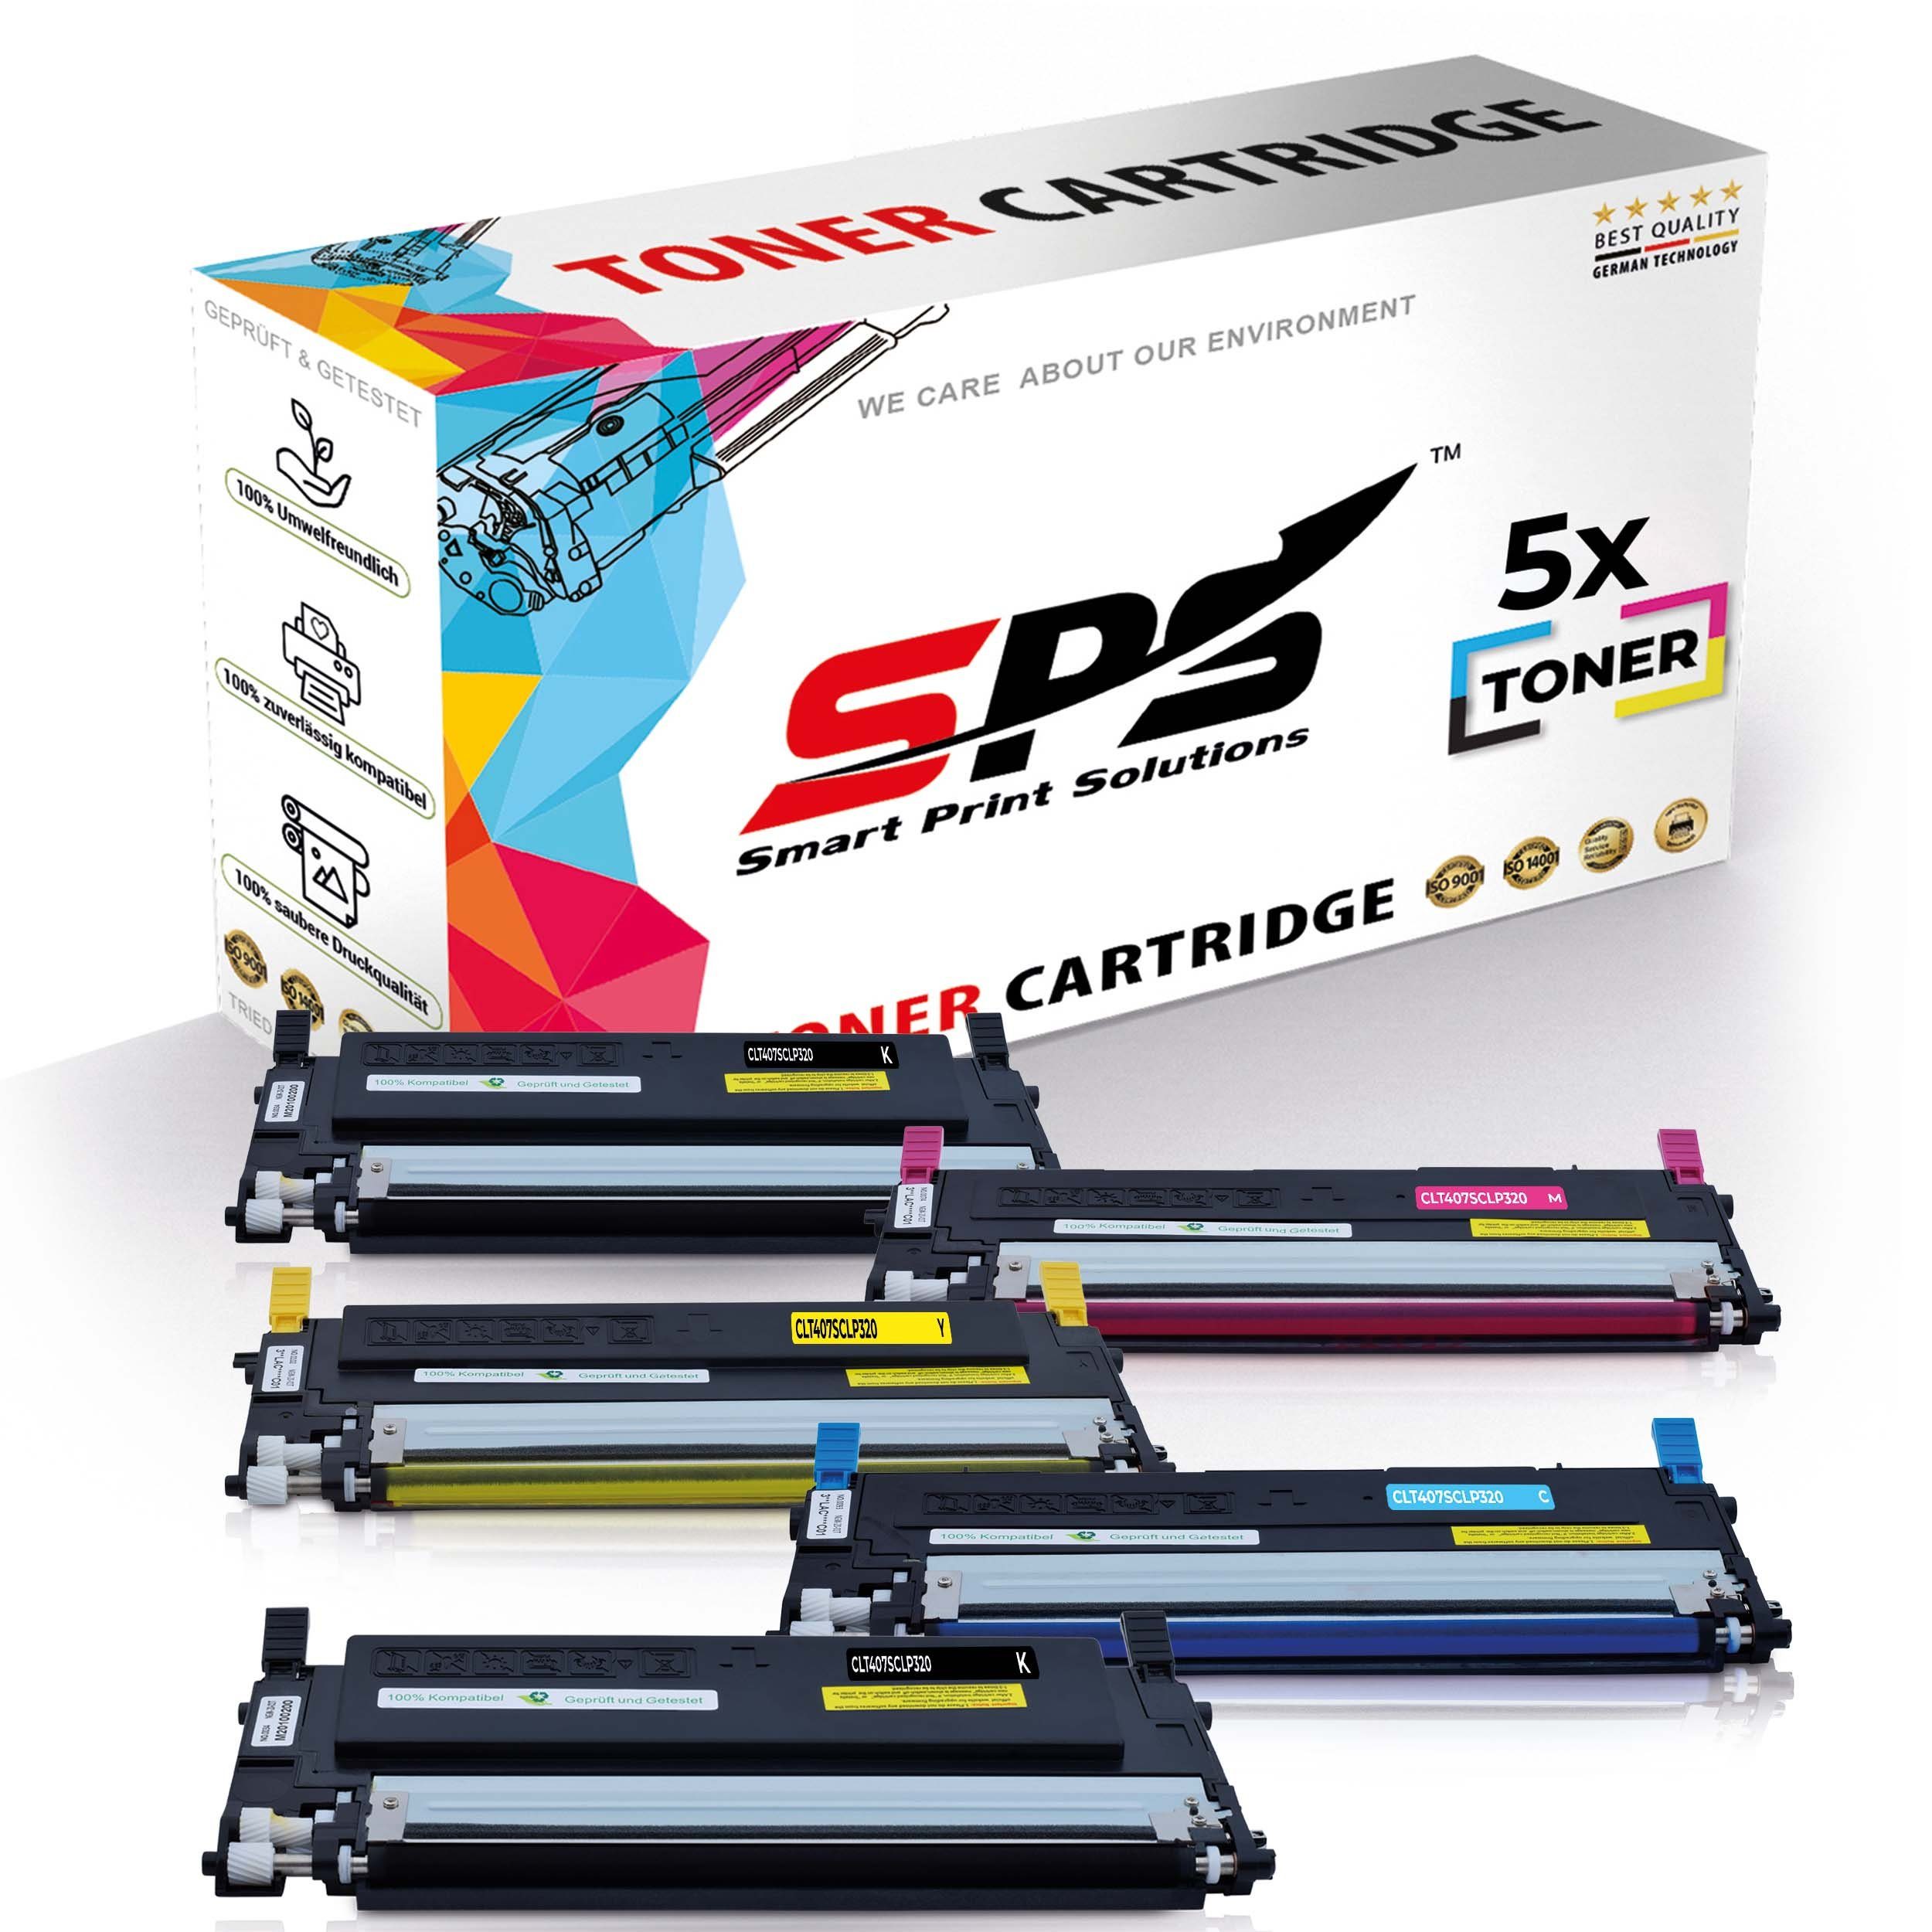 SPS Tonerkartusche Kompatibel für Samsung CLX-3180 C407 CLT-C407S, (5er Pack)